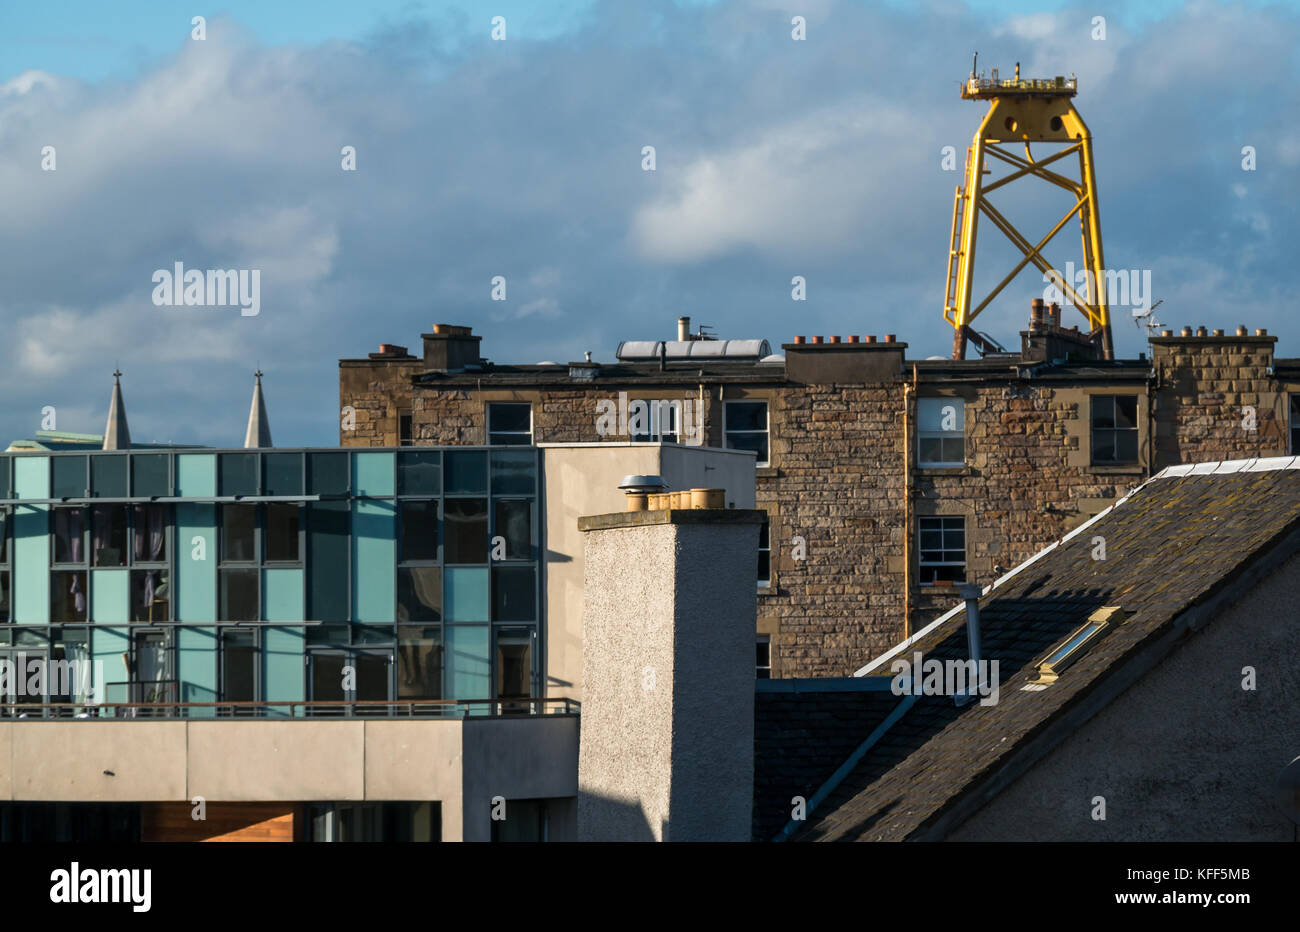 Blick über die Dächer des alten und modernen Gebäuden in Leith, Edinburgh, Schottland, Großbritannien, mit riesigen gelben wind turbine Plattform im Abstand Stockfoto